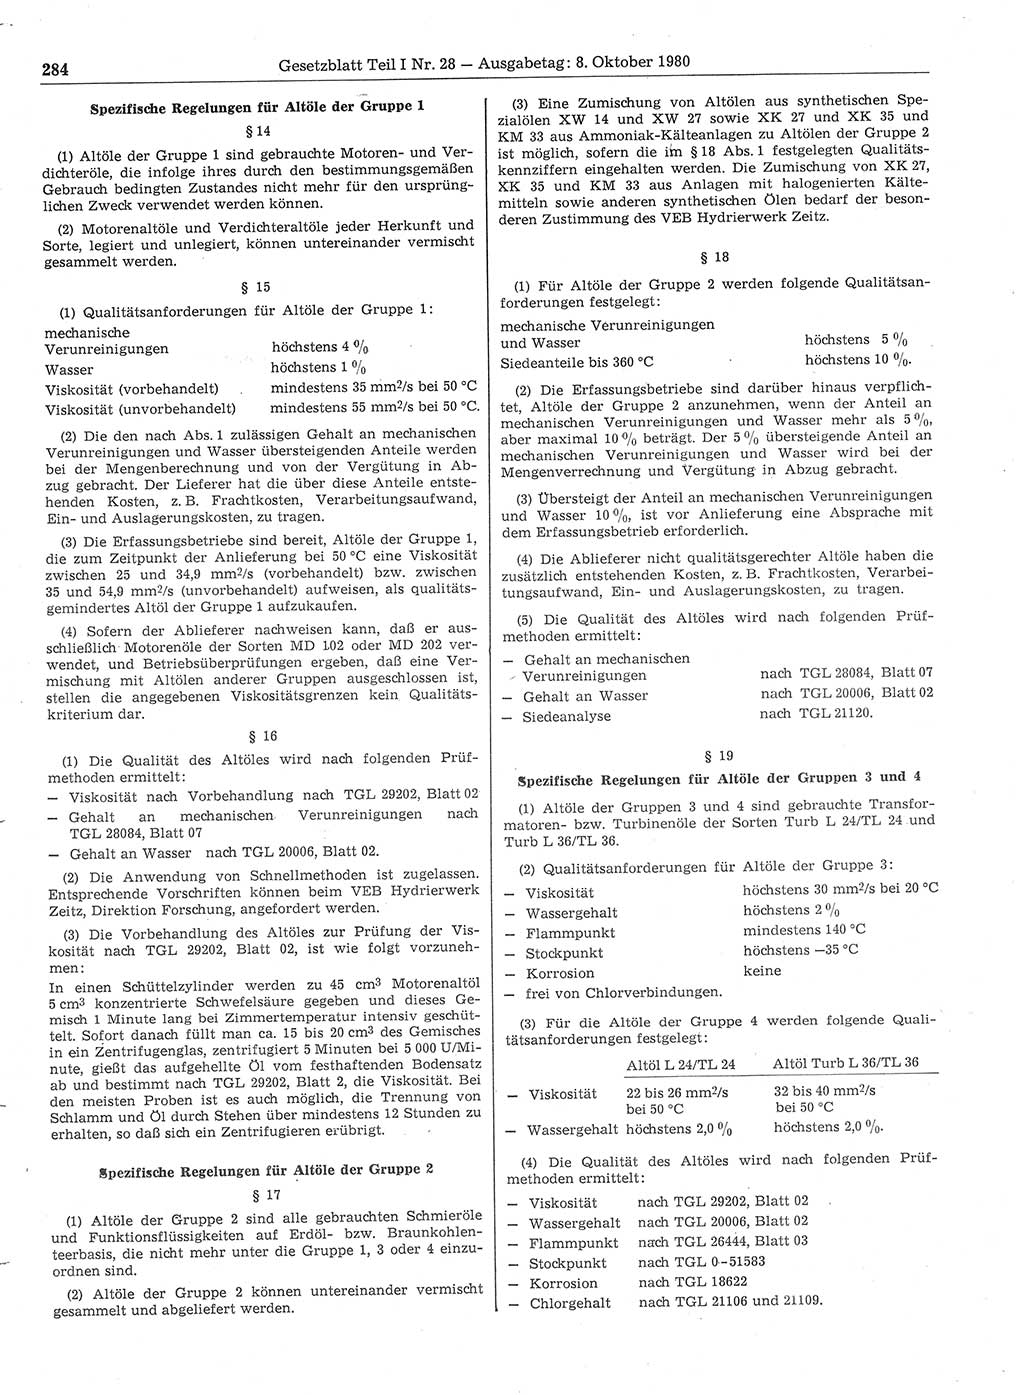 Gesetzblatt (GBl.) der Deutschen Demokratischen Republik (DDR) Teil Ⅰ 1980, Seite 284 (GBl. DDR Ⅰ 1980, S. 284)